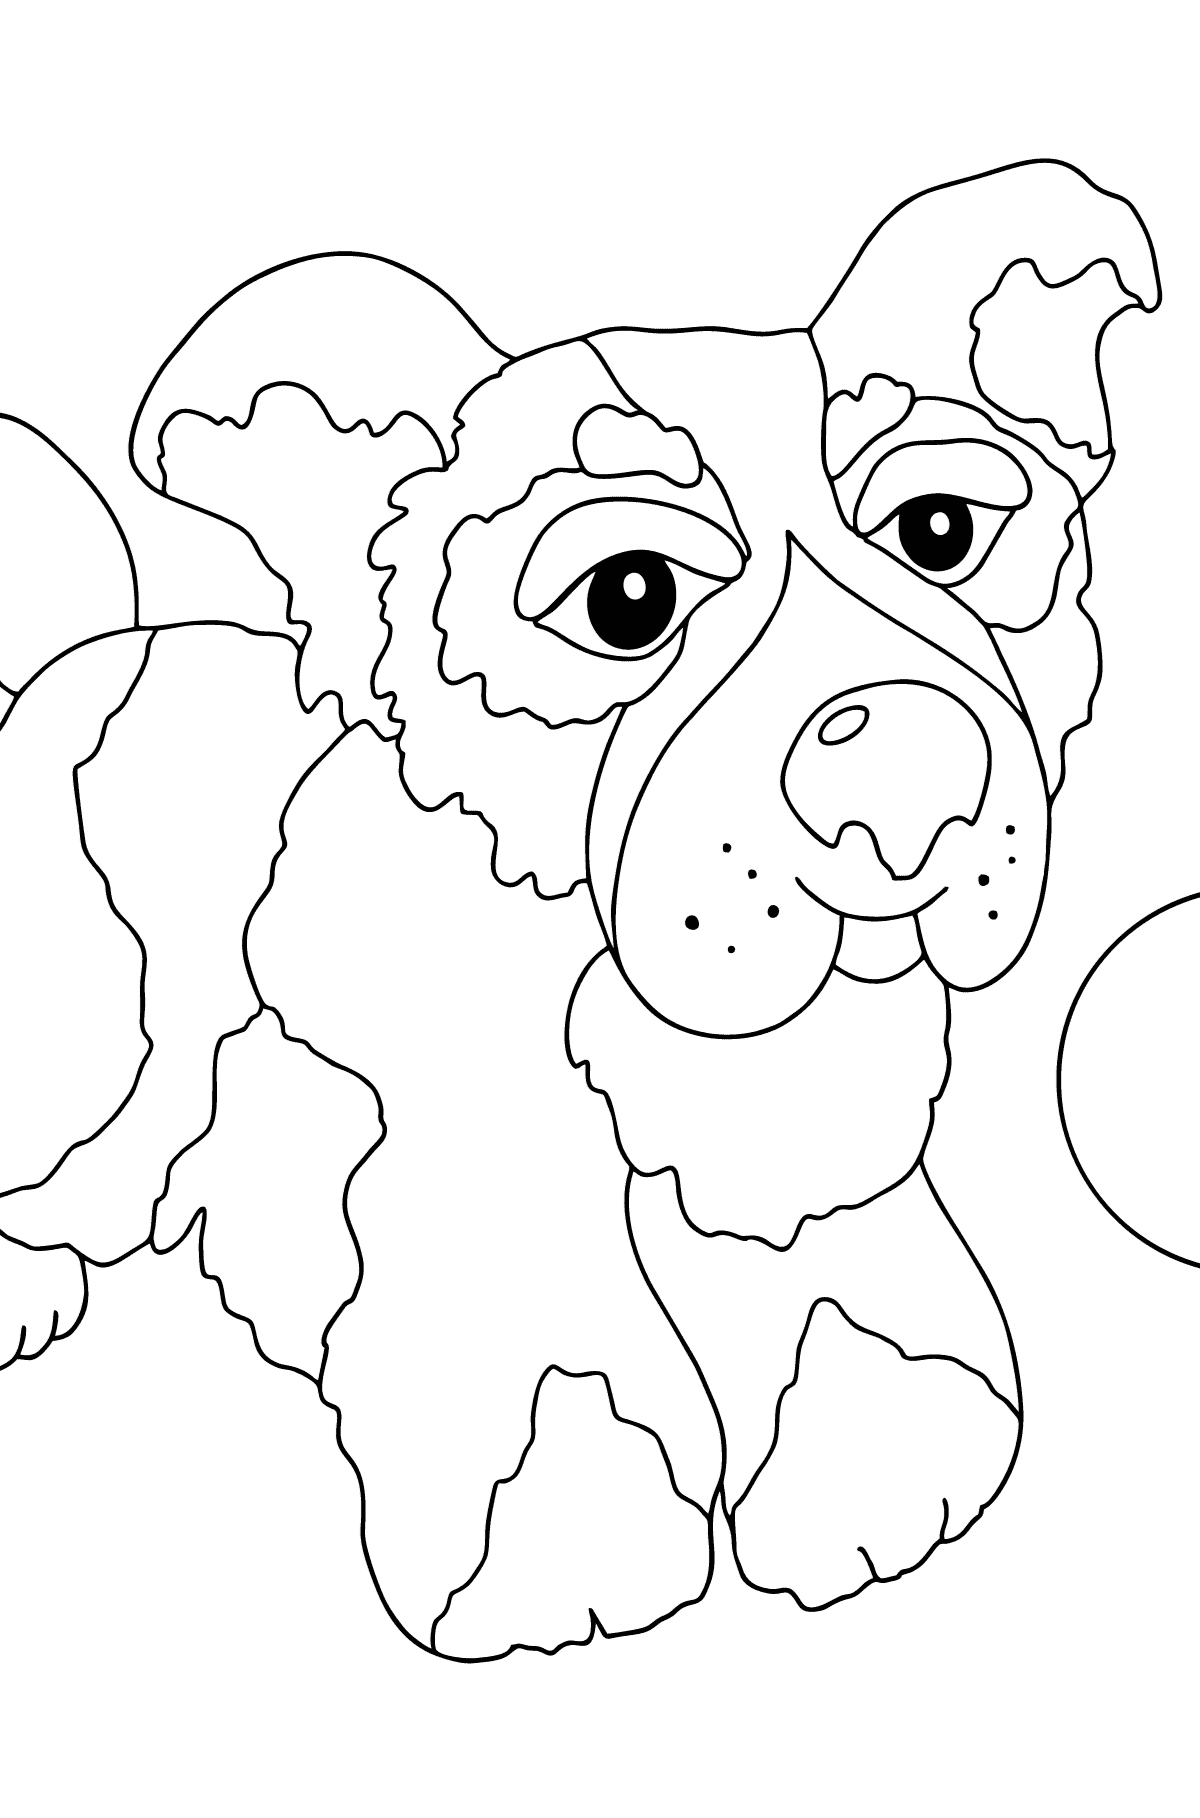 Dibujo para Colorear - Un Perro está Saltando con una Pelota Azul - Colorear para Niños